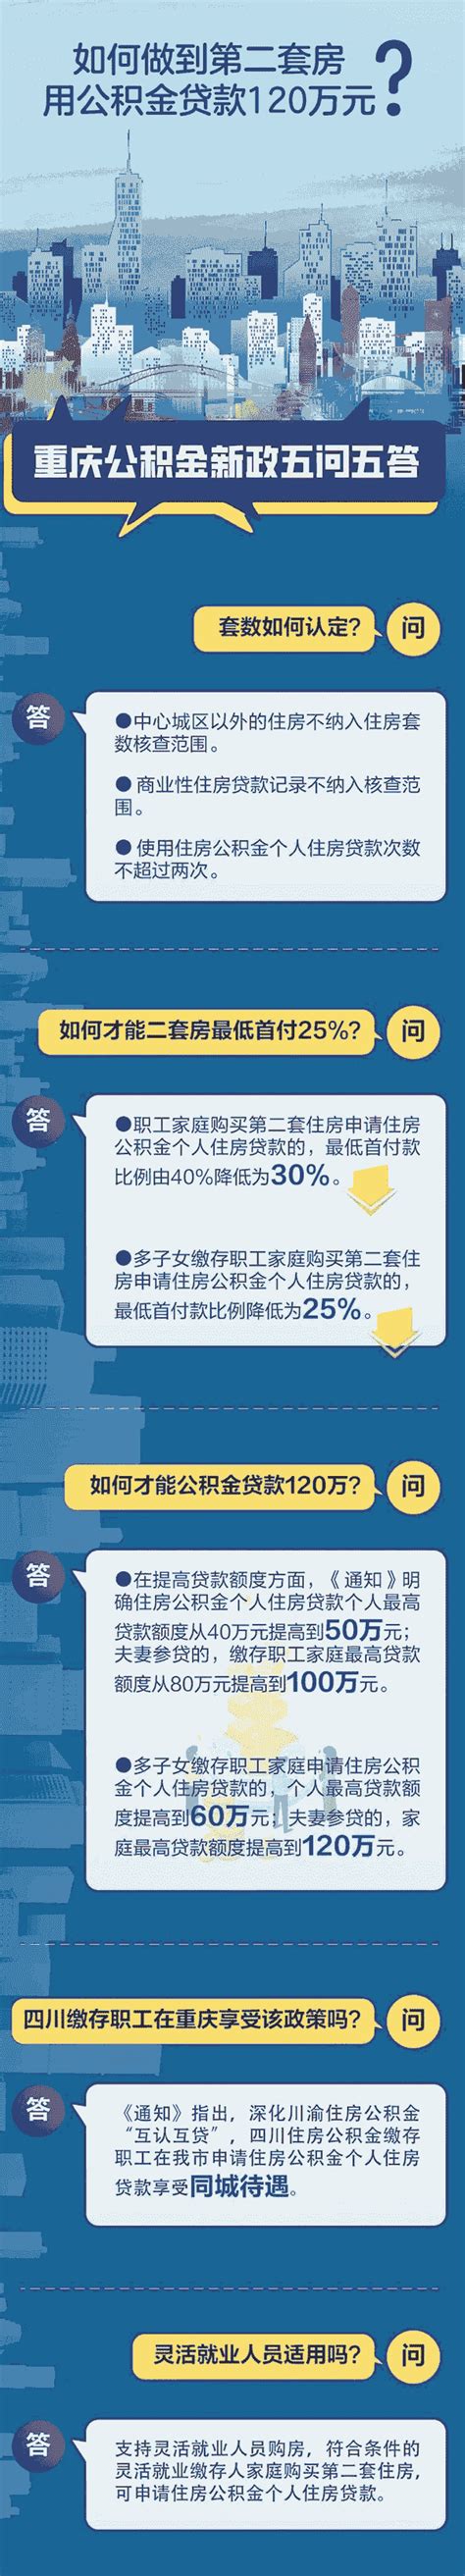 重庆公积金贷款最高额度是多少-楼盘网